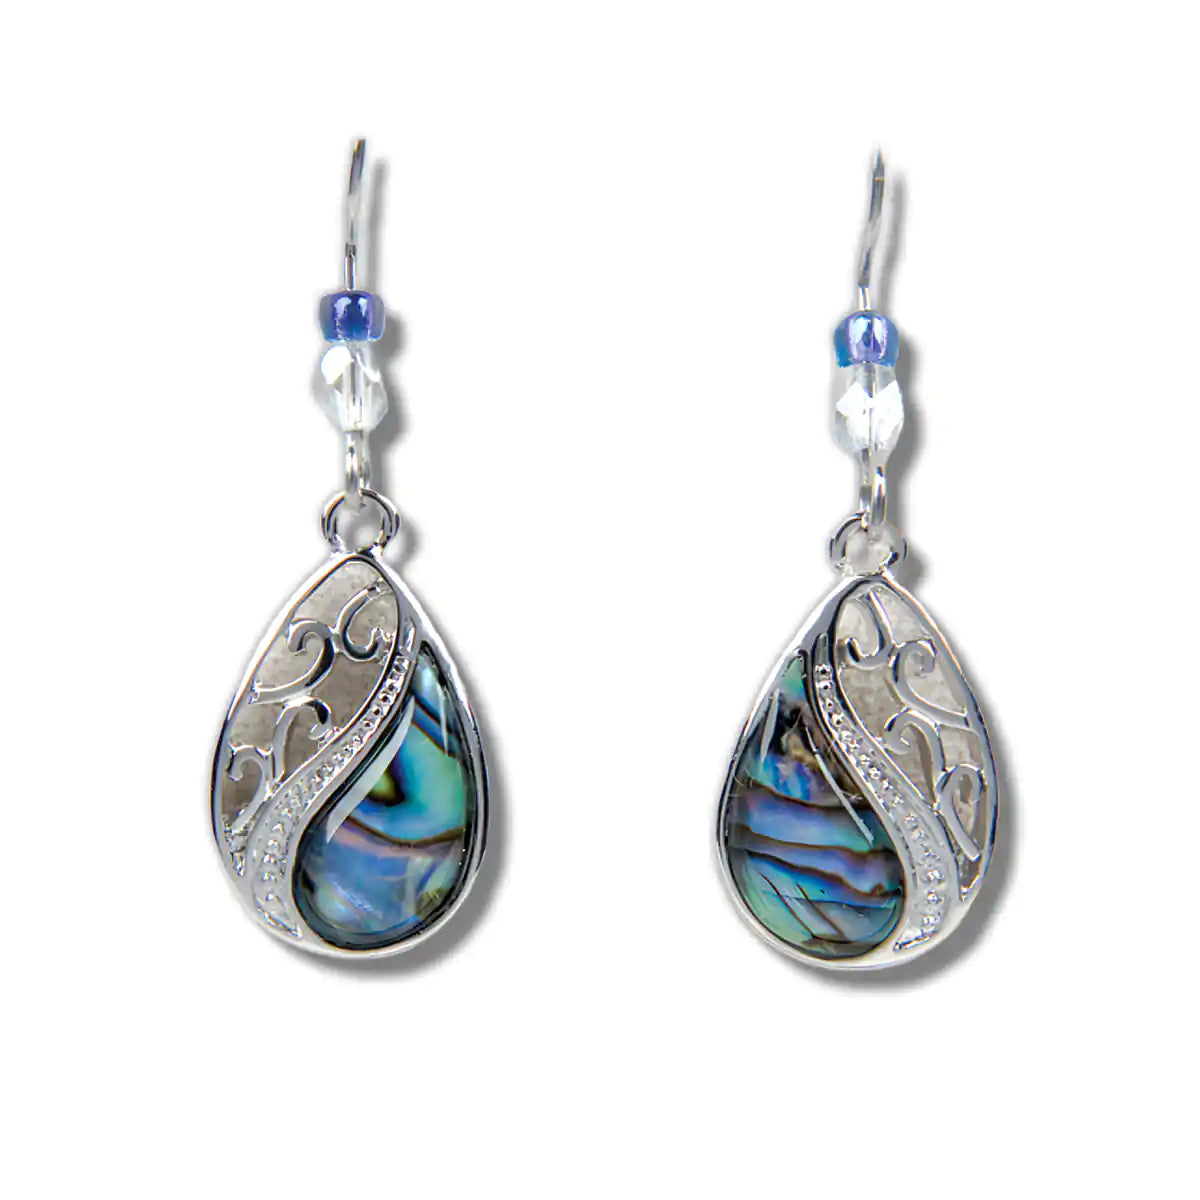 Glacier pearle heirloom earrings